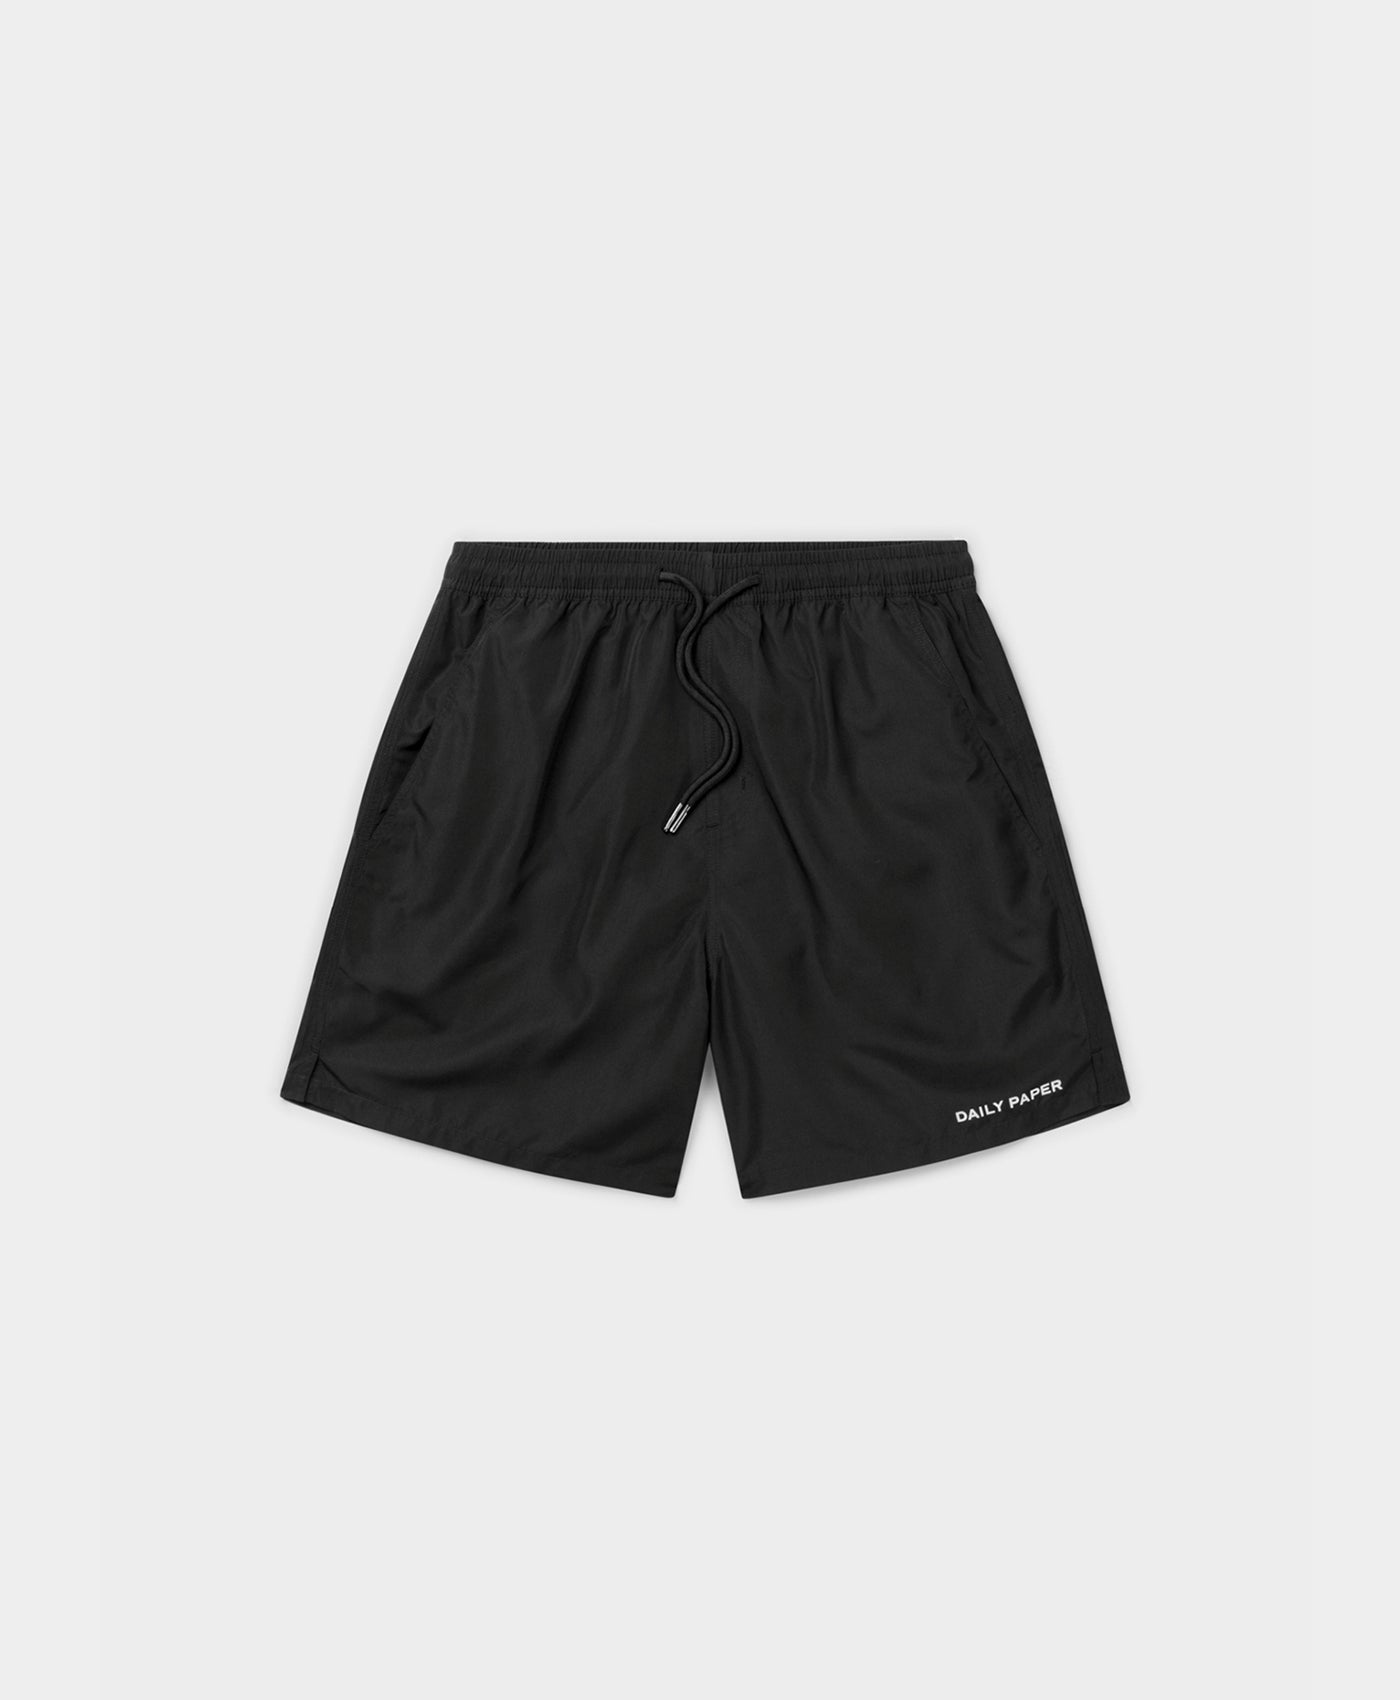 DP - Black Etype Swim Shorts - Packshot - Front